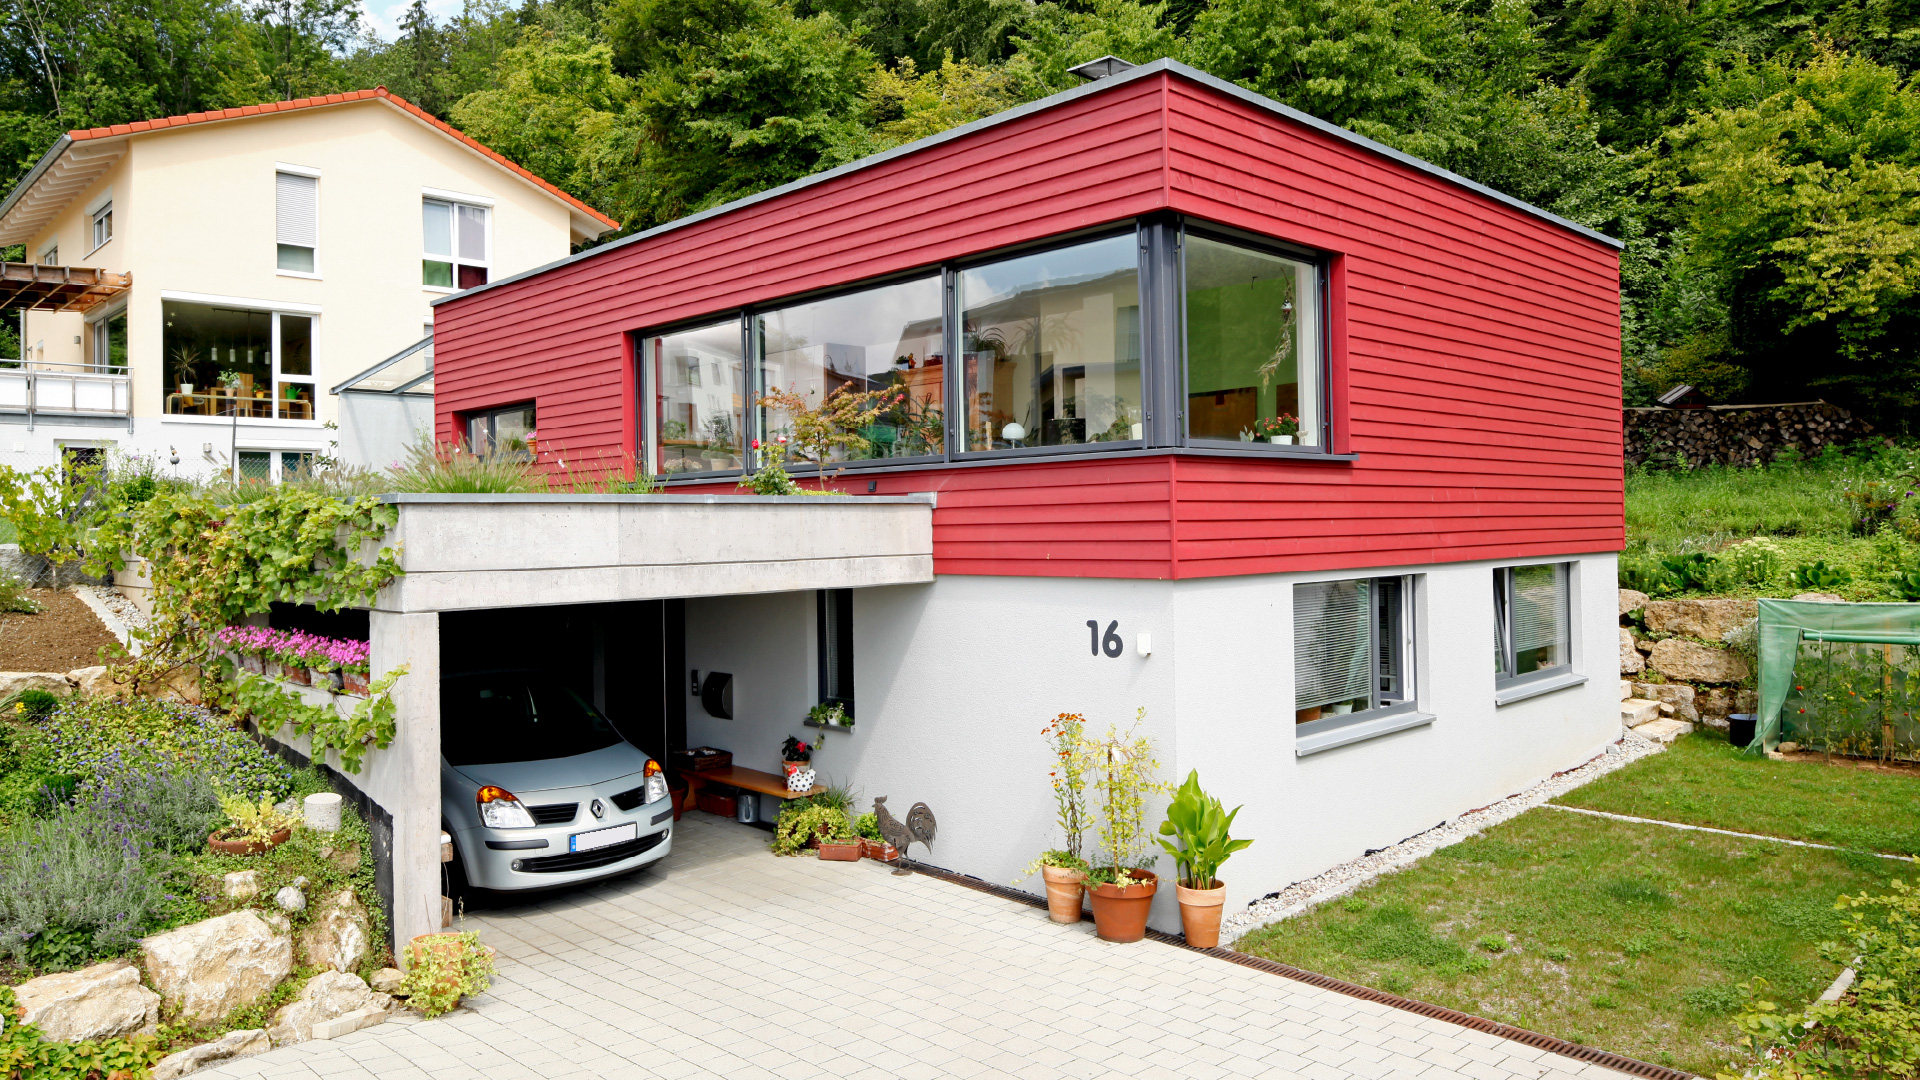 Die Holzfassade von Haus Breitenbach bringt eine individuelle und interessante Massivhausgestaltung.